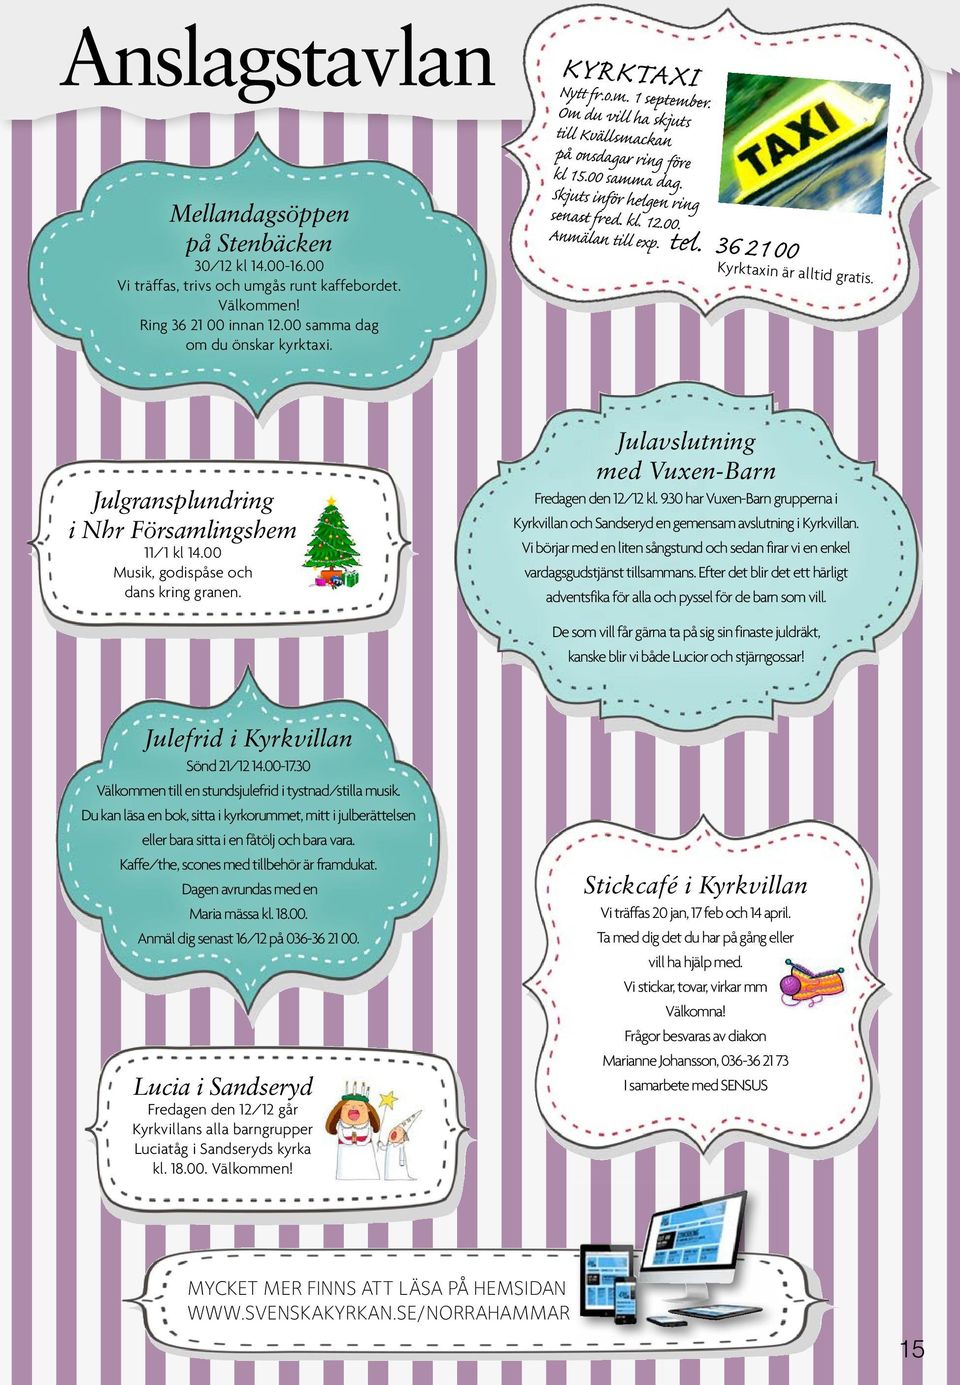 Julgransplundring i Nhr Församlingshem 11/1 kl 14.00 Musik, godispåse och dans kring granen. Julavslutning med Vuxen-Barn Fredagen den 12/12 kl. 9.